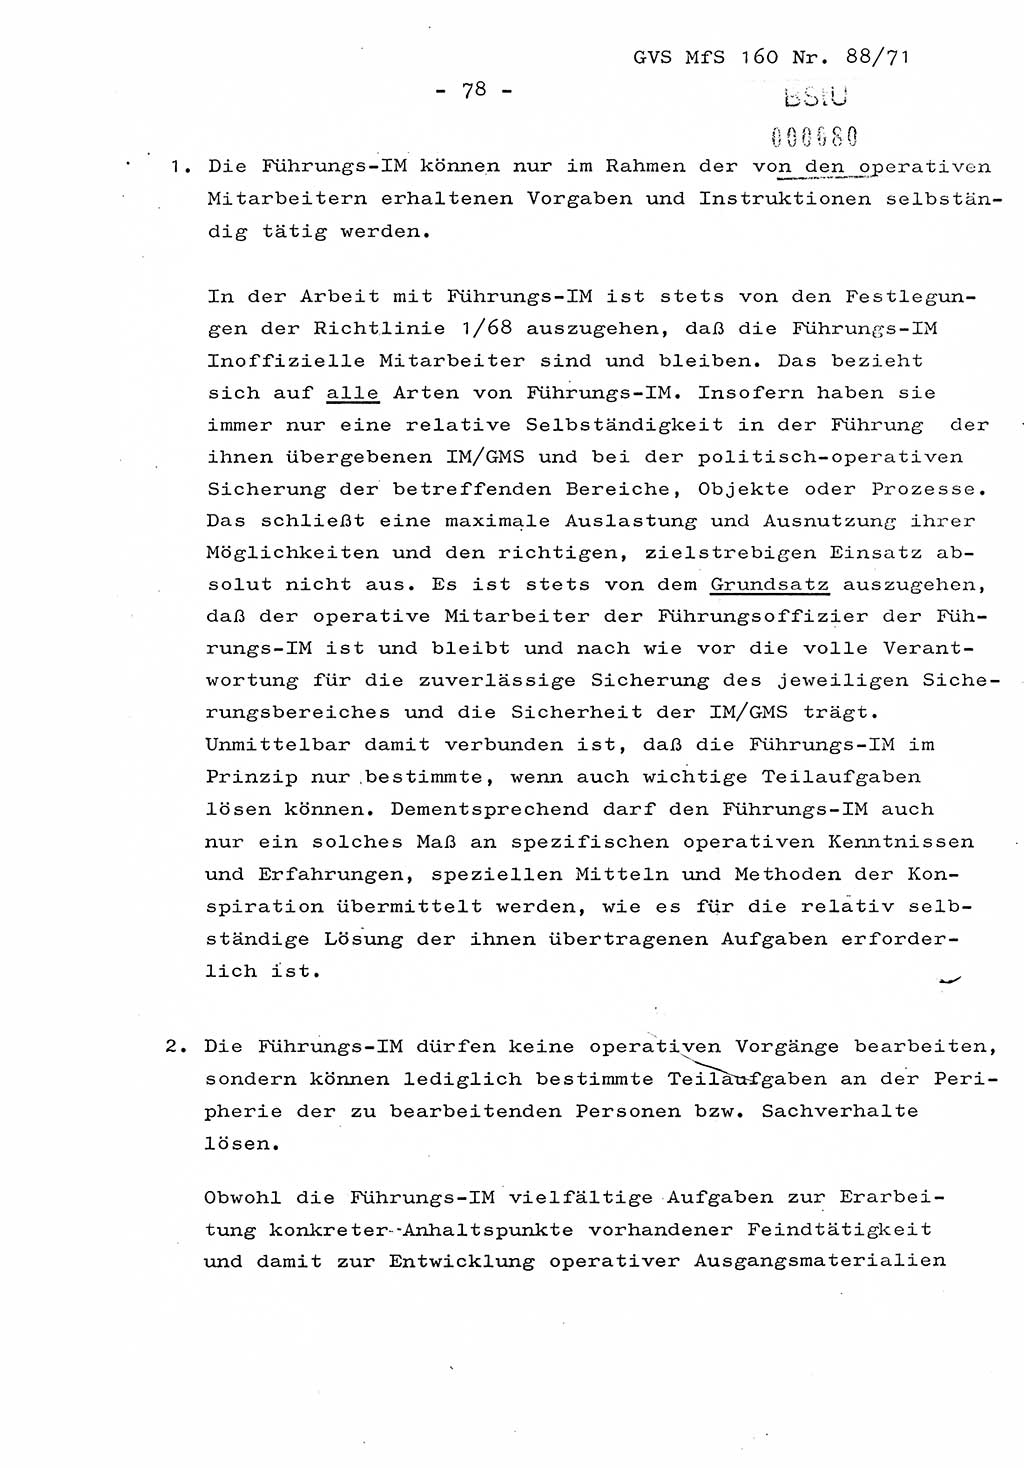 Dissertation Oberstleutnant Josef Schwarz (BV Schwerin), Major Fritz Amm (JHS), Hauptmann Peter Gräßler (JHS), Ministerium für Staatssicherheit (MfS) [Deutsche Demokratische Republik (DDR)], Juristische Hochschule (JHS), Geheime Verschlußsache (GVS) 160-88/71, Potsdam 1972, Seite 78 (Diss. MfS DDR JHS GVS 160-88/71 1972, S. 78)